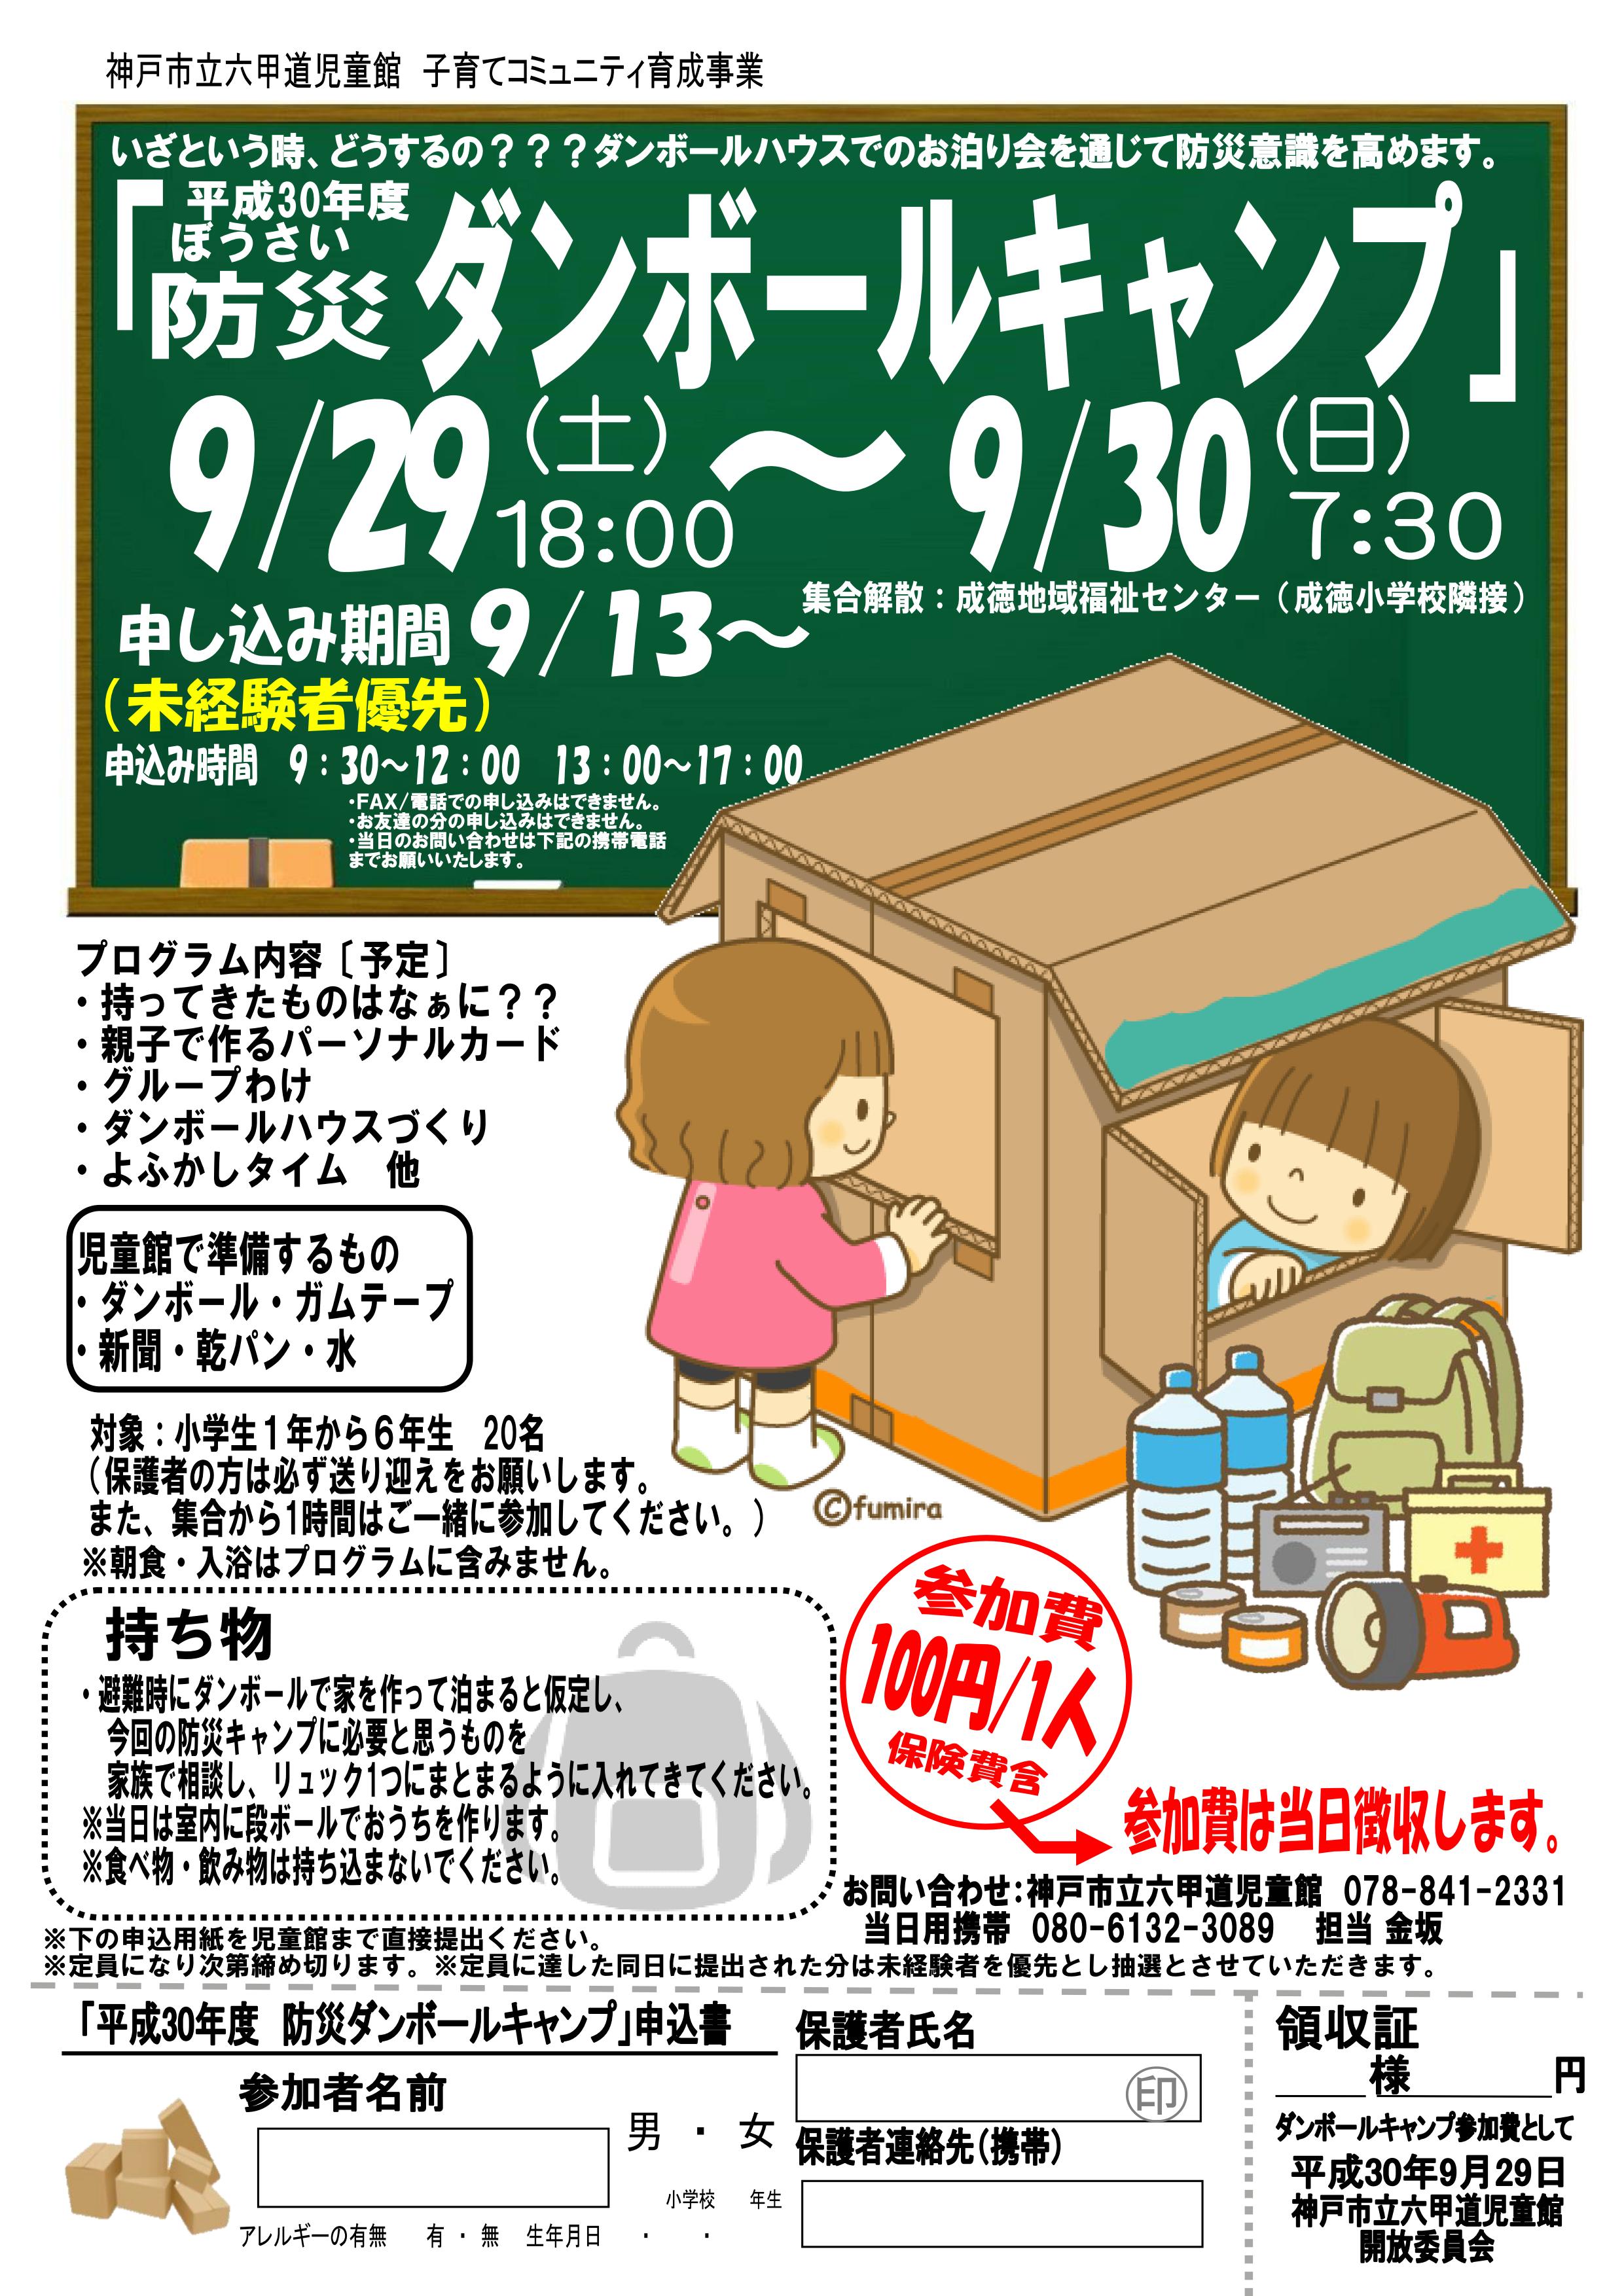 神戸市立六甲道児童館　『防災段ボールキャンプの警報対応について』